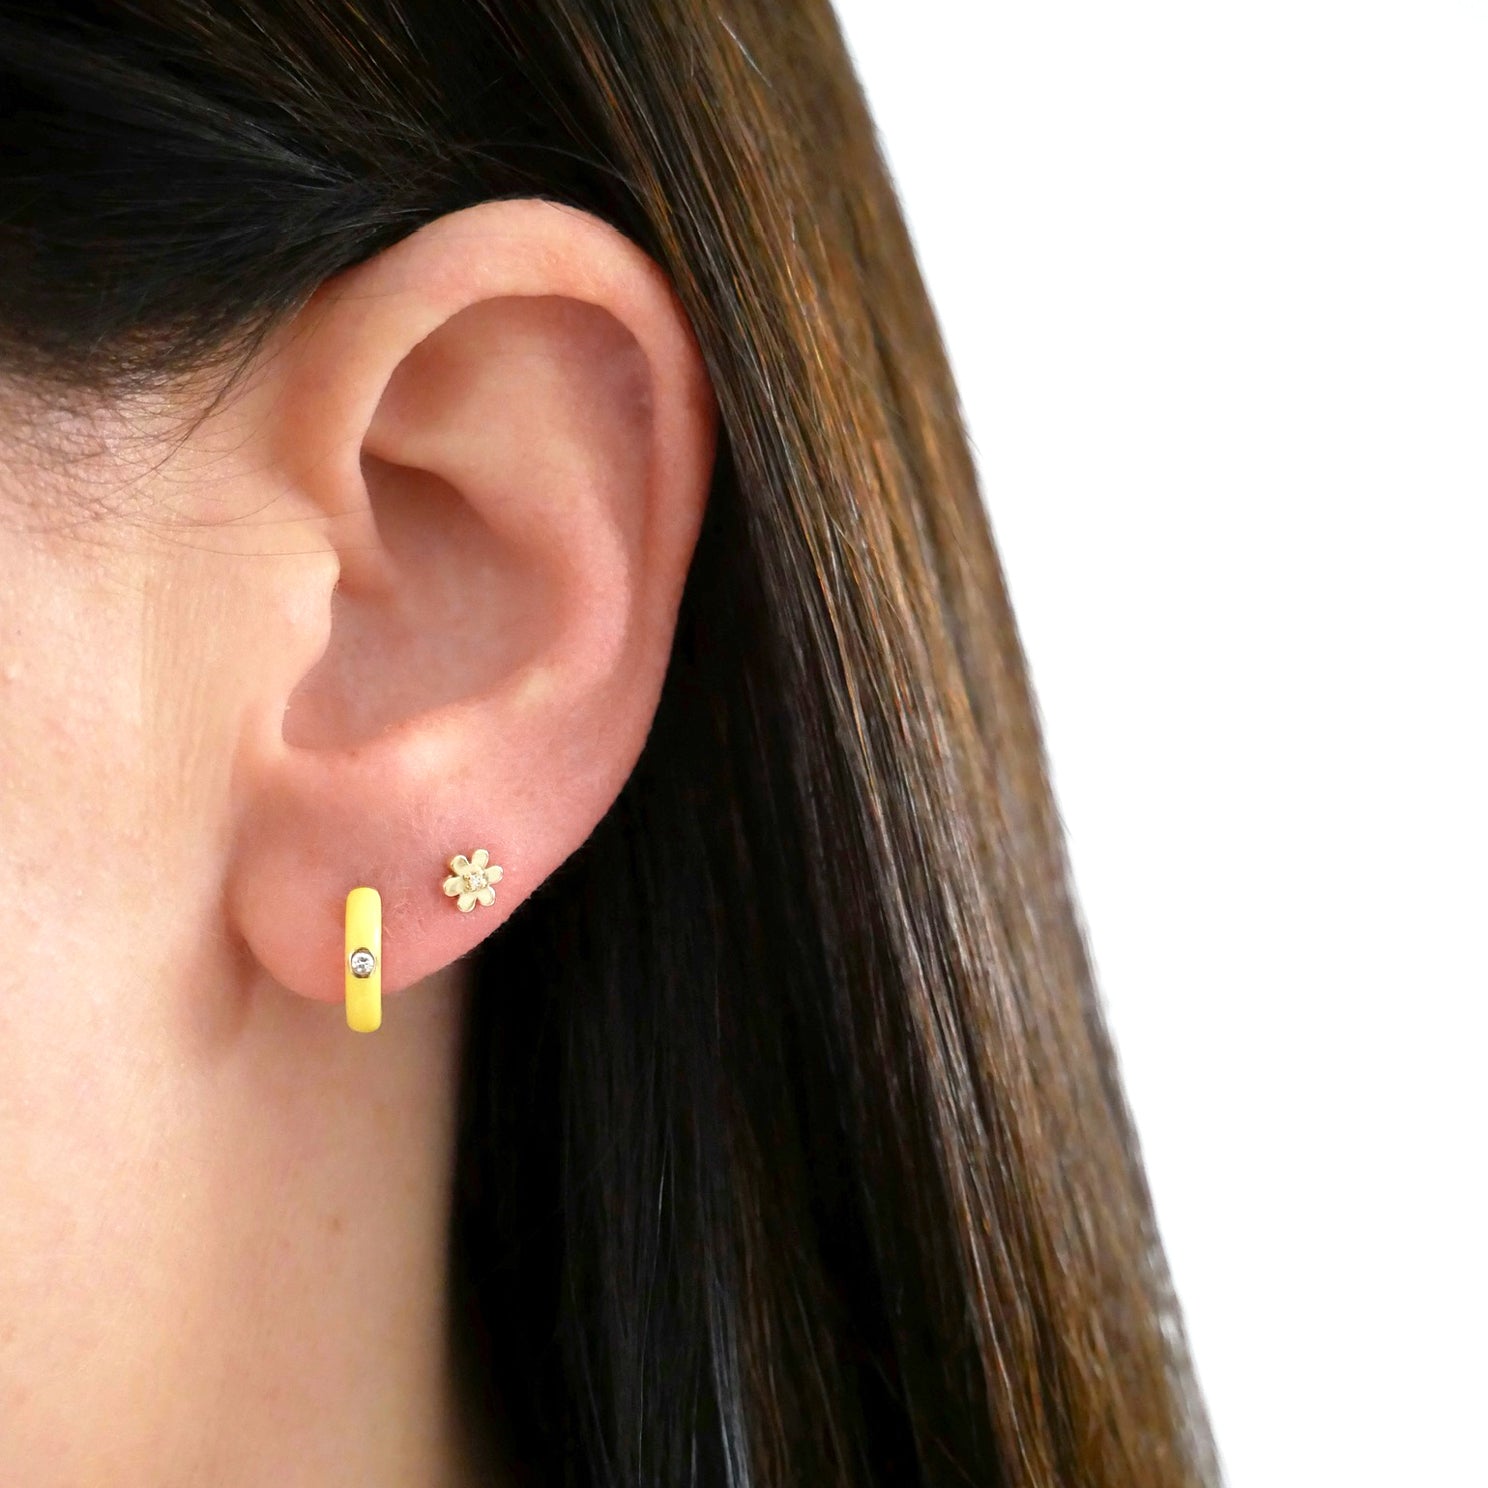 Diamond Yellow Enamel Huggie Earring in 14k yellow gold next to flower stud styled on ear of model